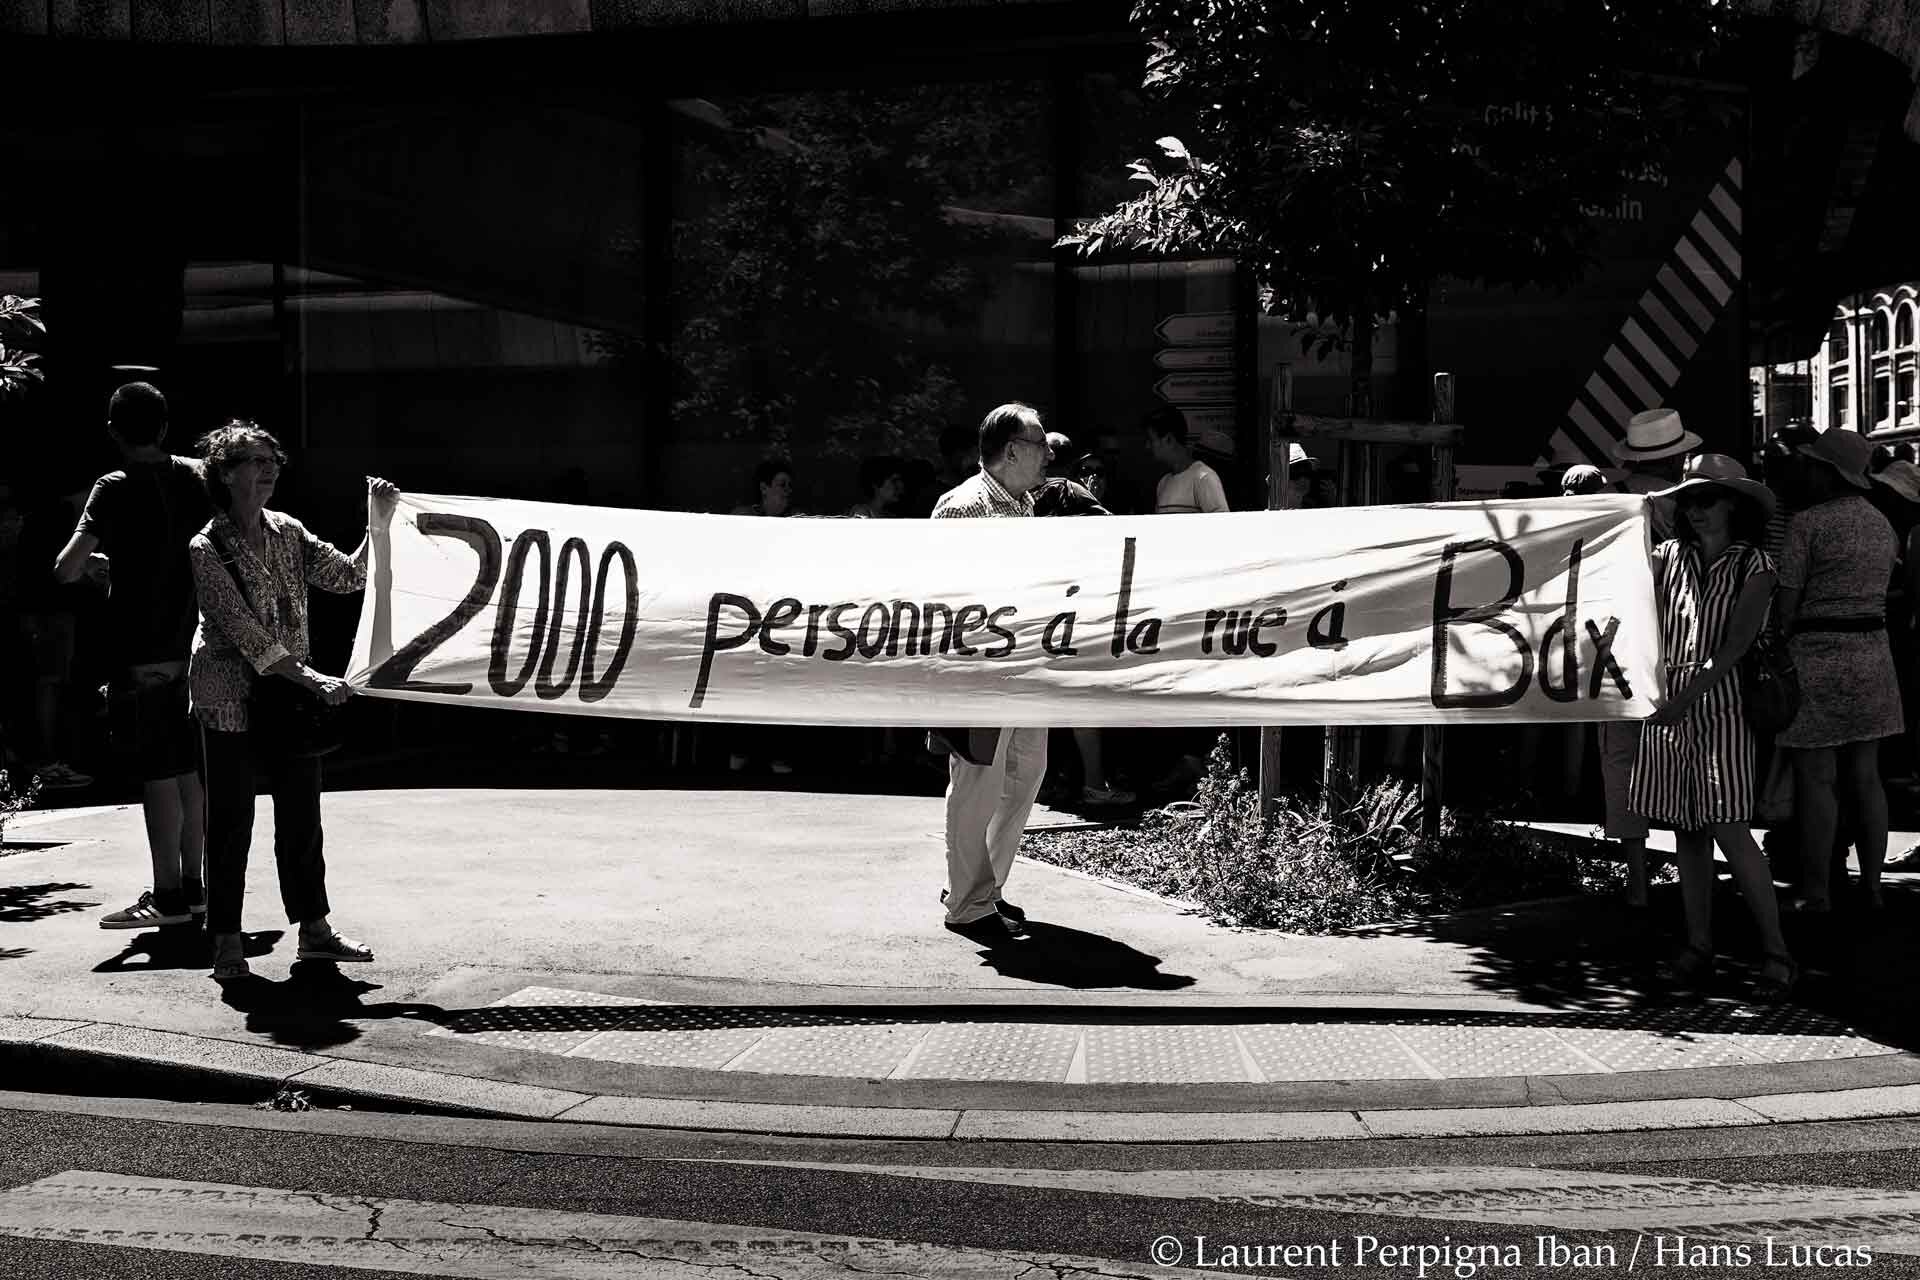 Une banderole tenue par deux femmes indique : "2 000 personnes à la rue à Bordeaux", en référence aux expulsions de squats.